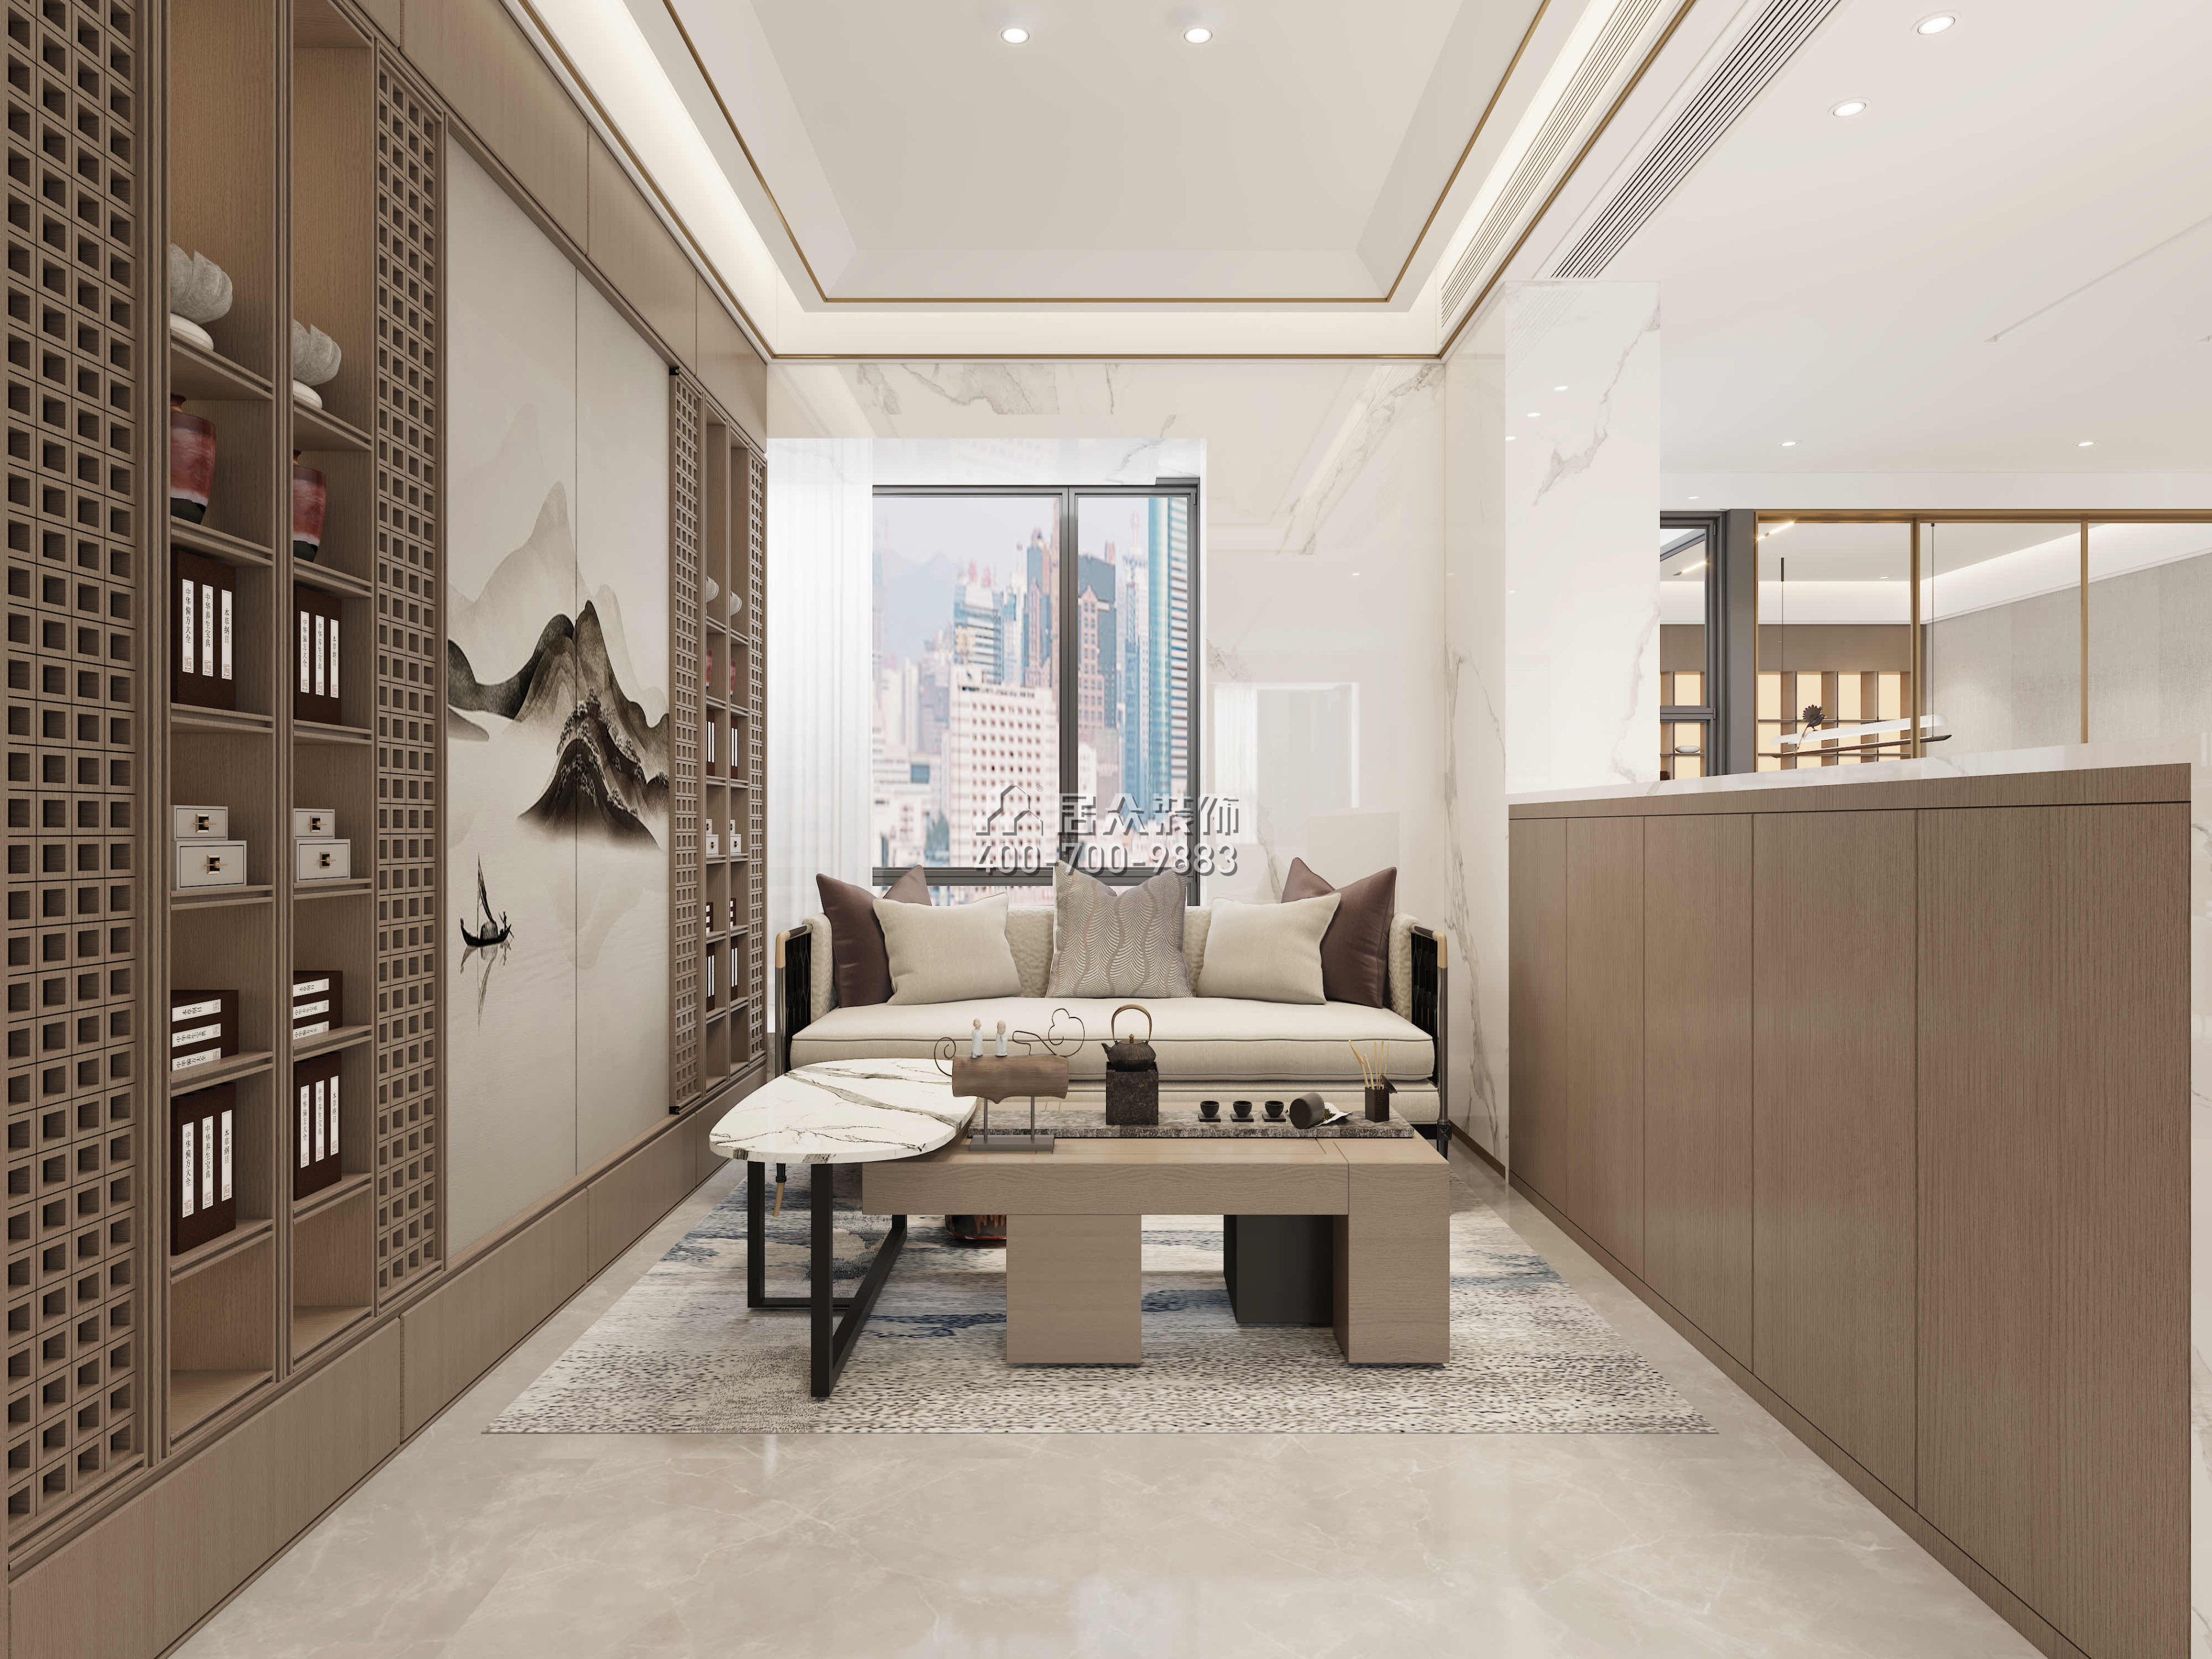 寶利豪庭500平方米中式風格復式戶型茶室裝修效果圖